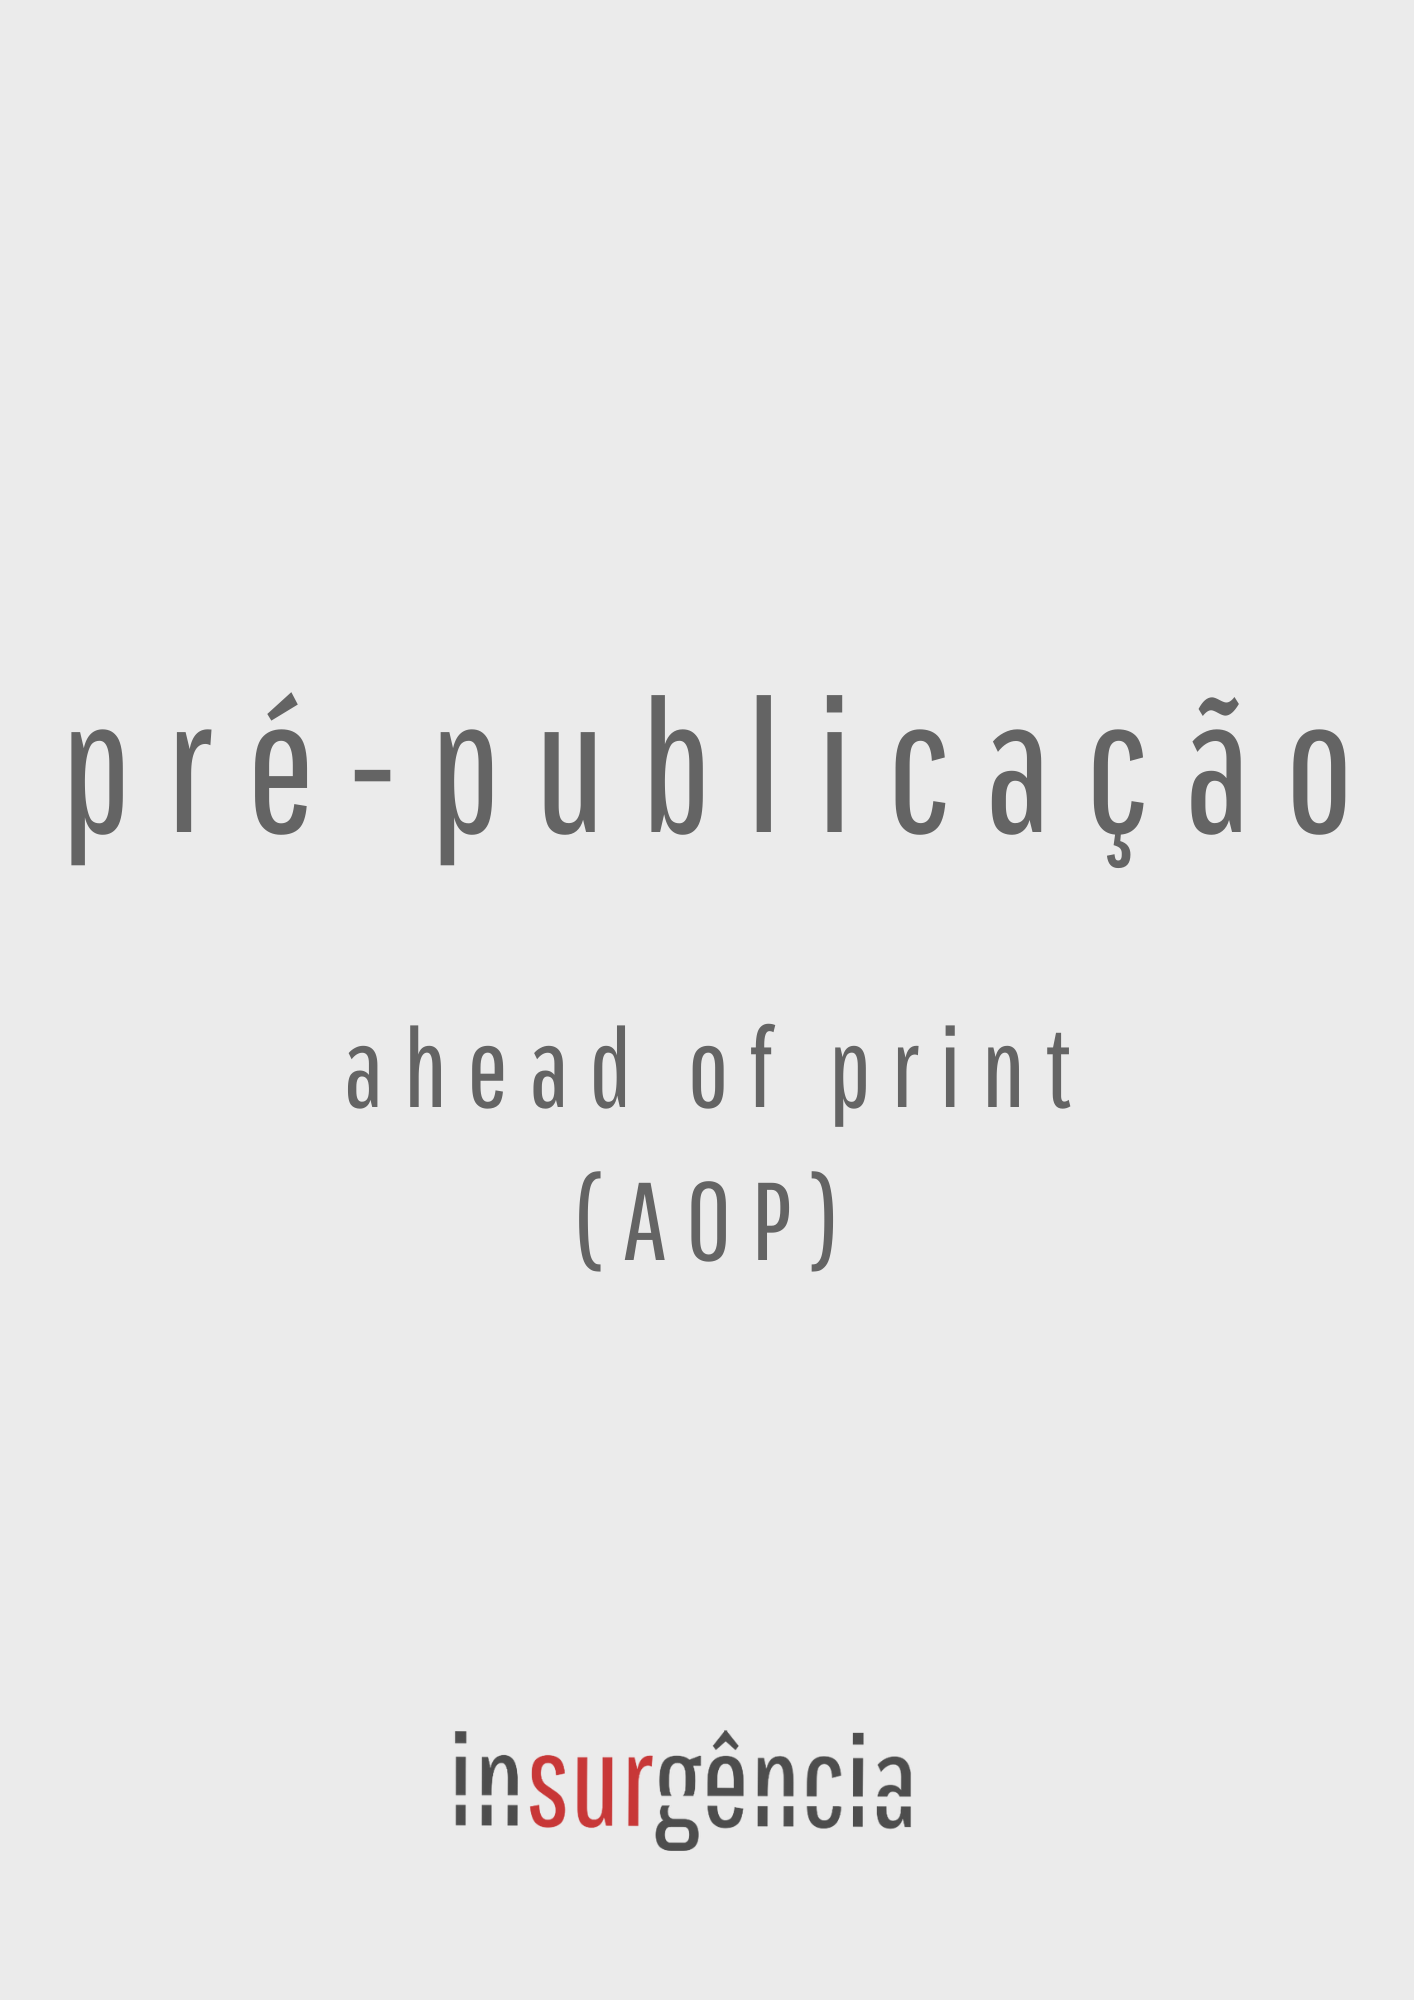 					Visualizar Pré-publicação / Ahead of Print (AOP)
				